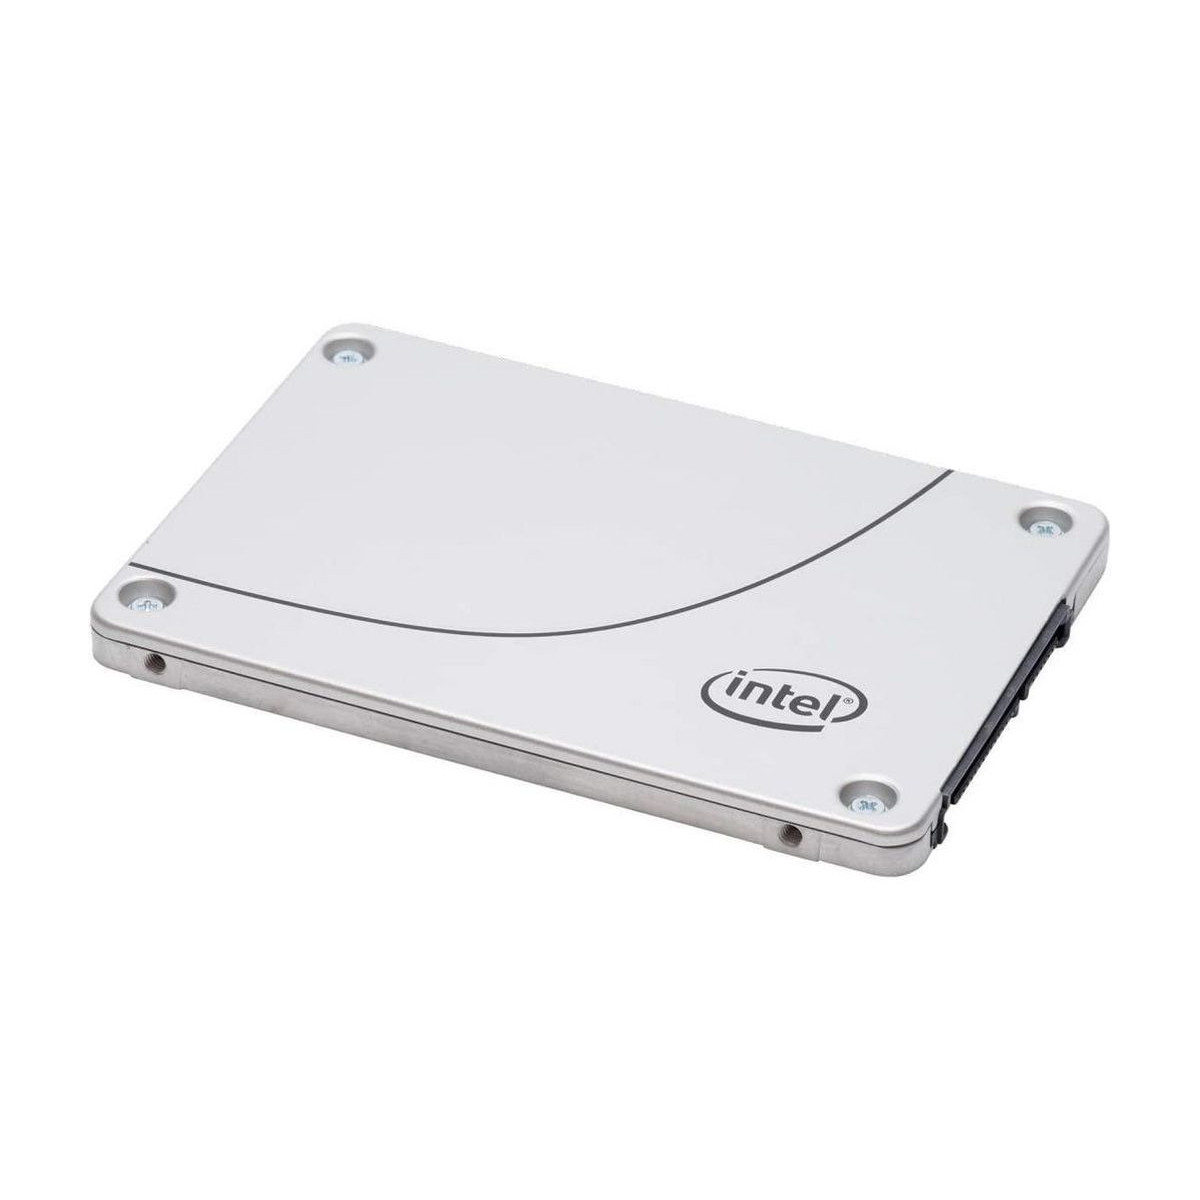 CISCO INTEL 480GB SSD SATA D3-S4610 6G 2,5